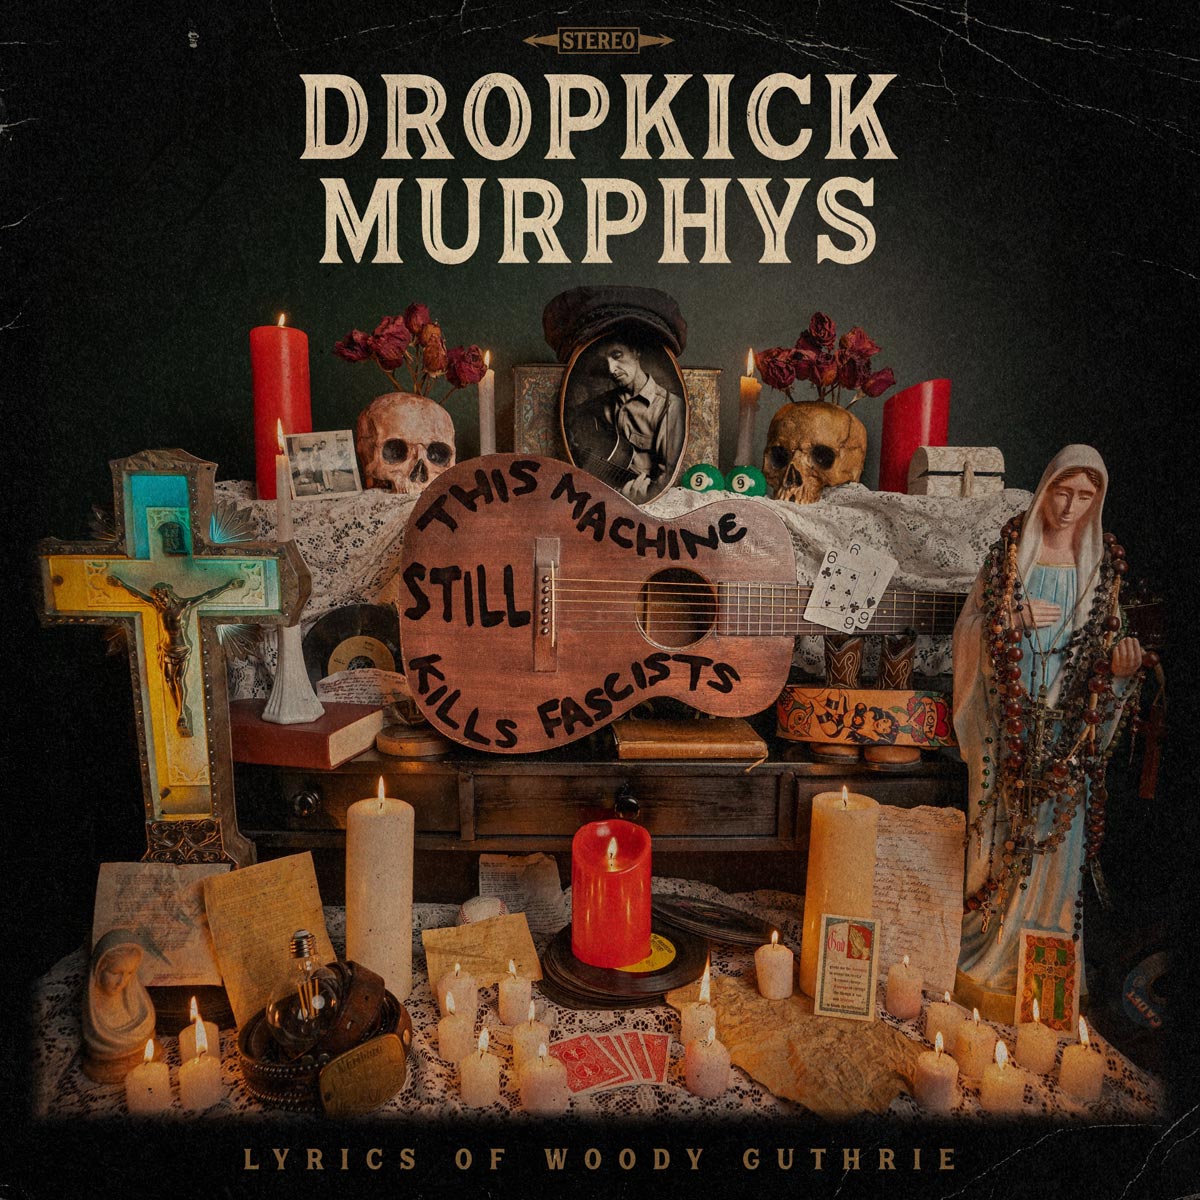 Dropkick-Murphys---This-Machine-Still-Kills-Facists